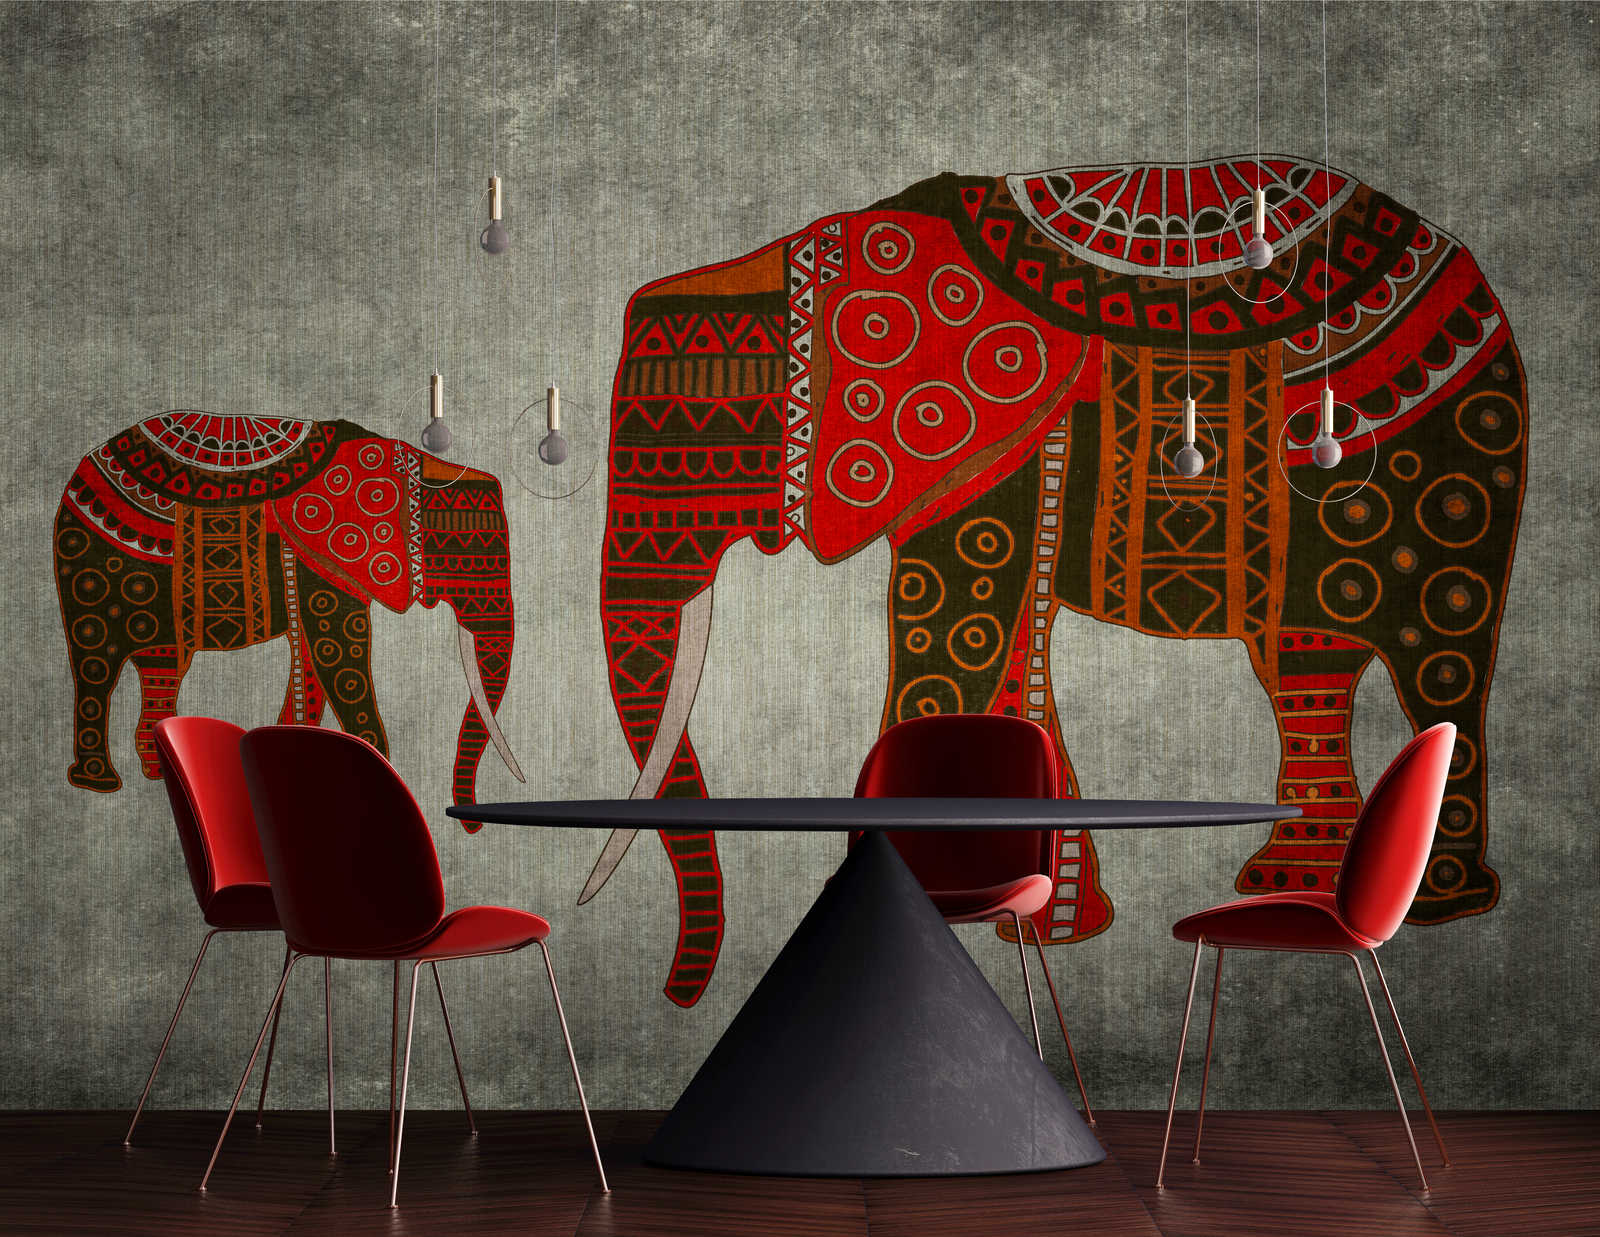             Nairobi 4 - Papel pintado de elefante con patrones étnicos y efecto de textura
        